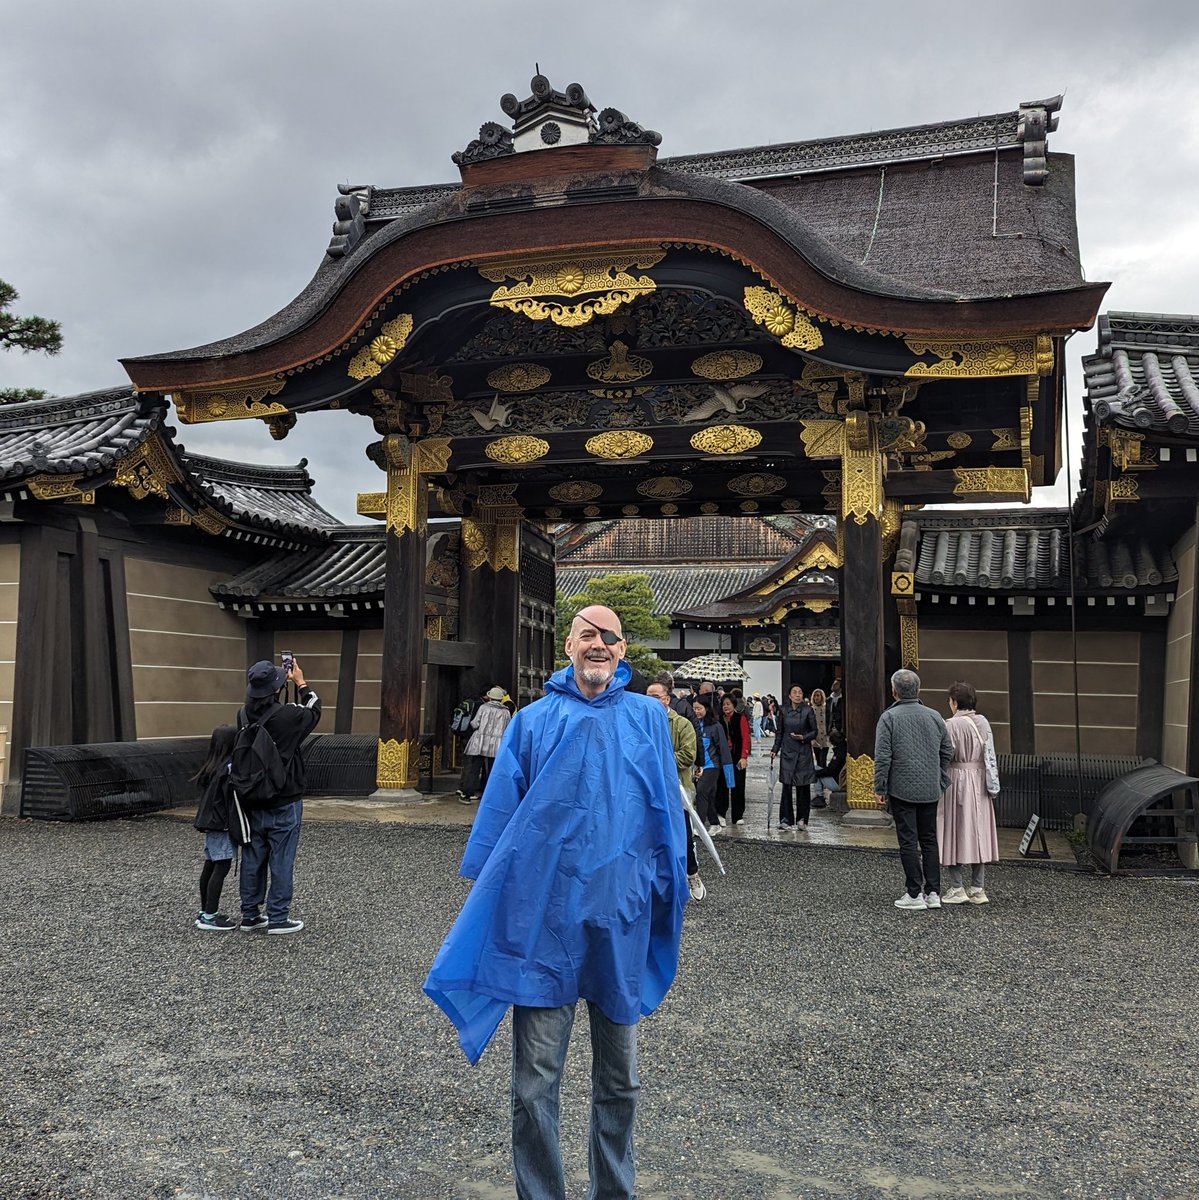 At Nijo Castle in Kyoto.